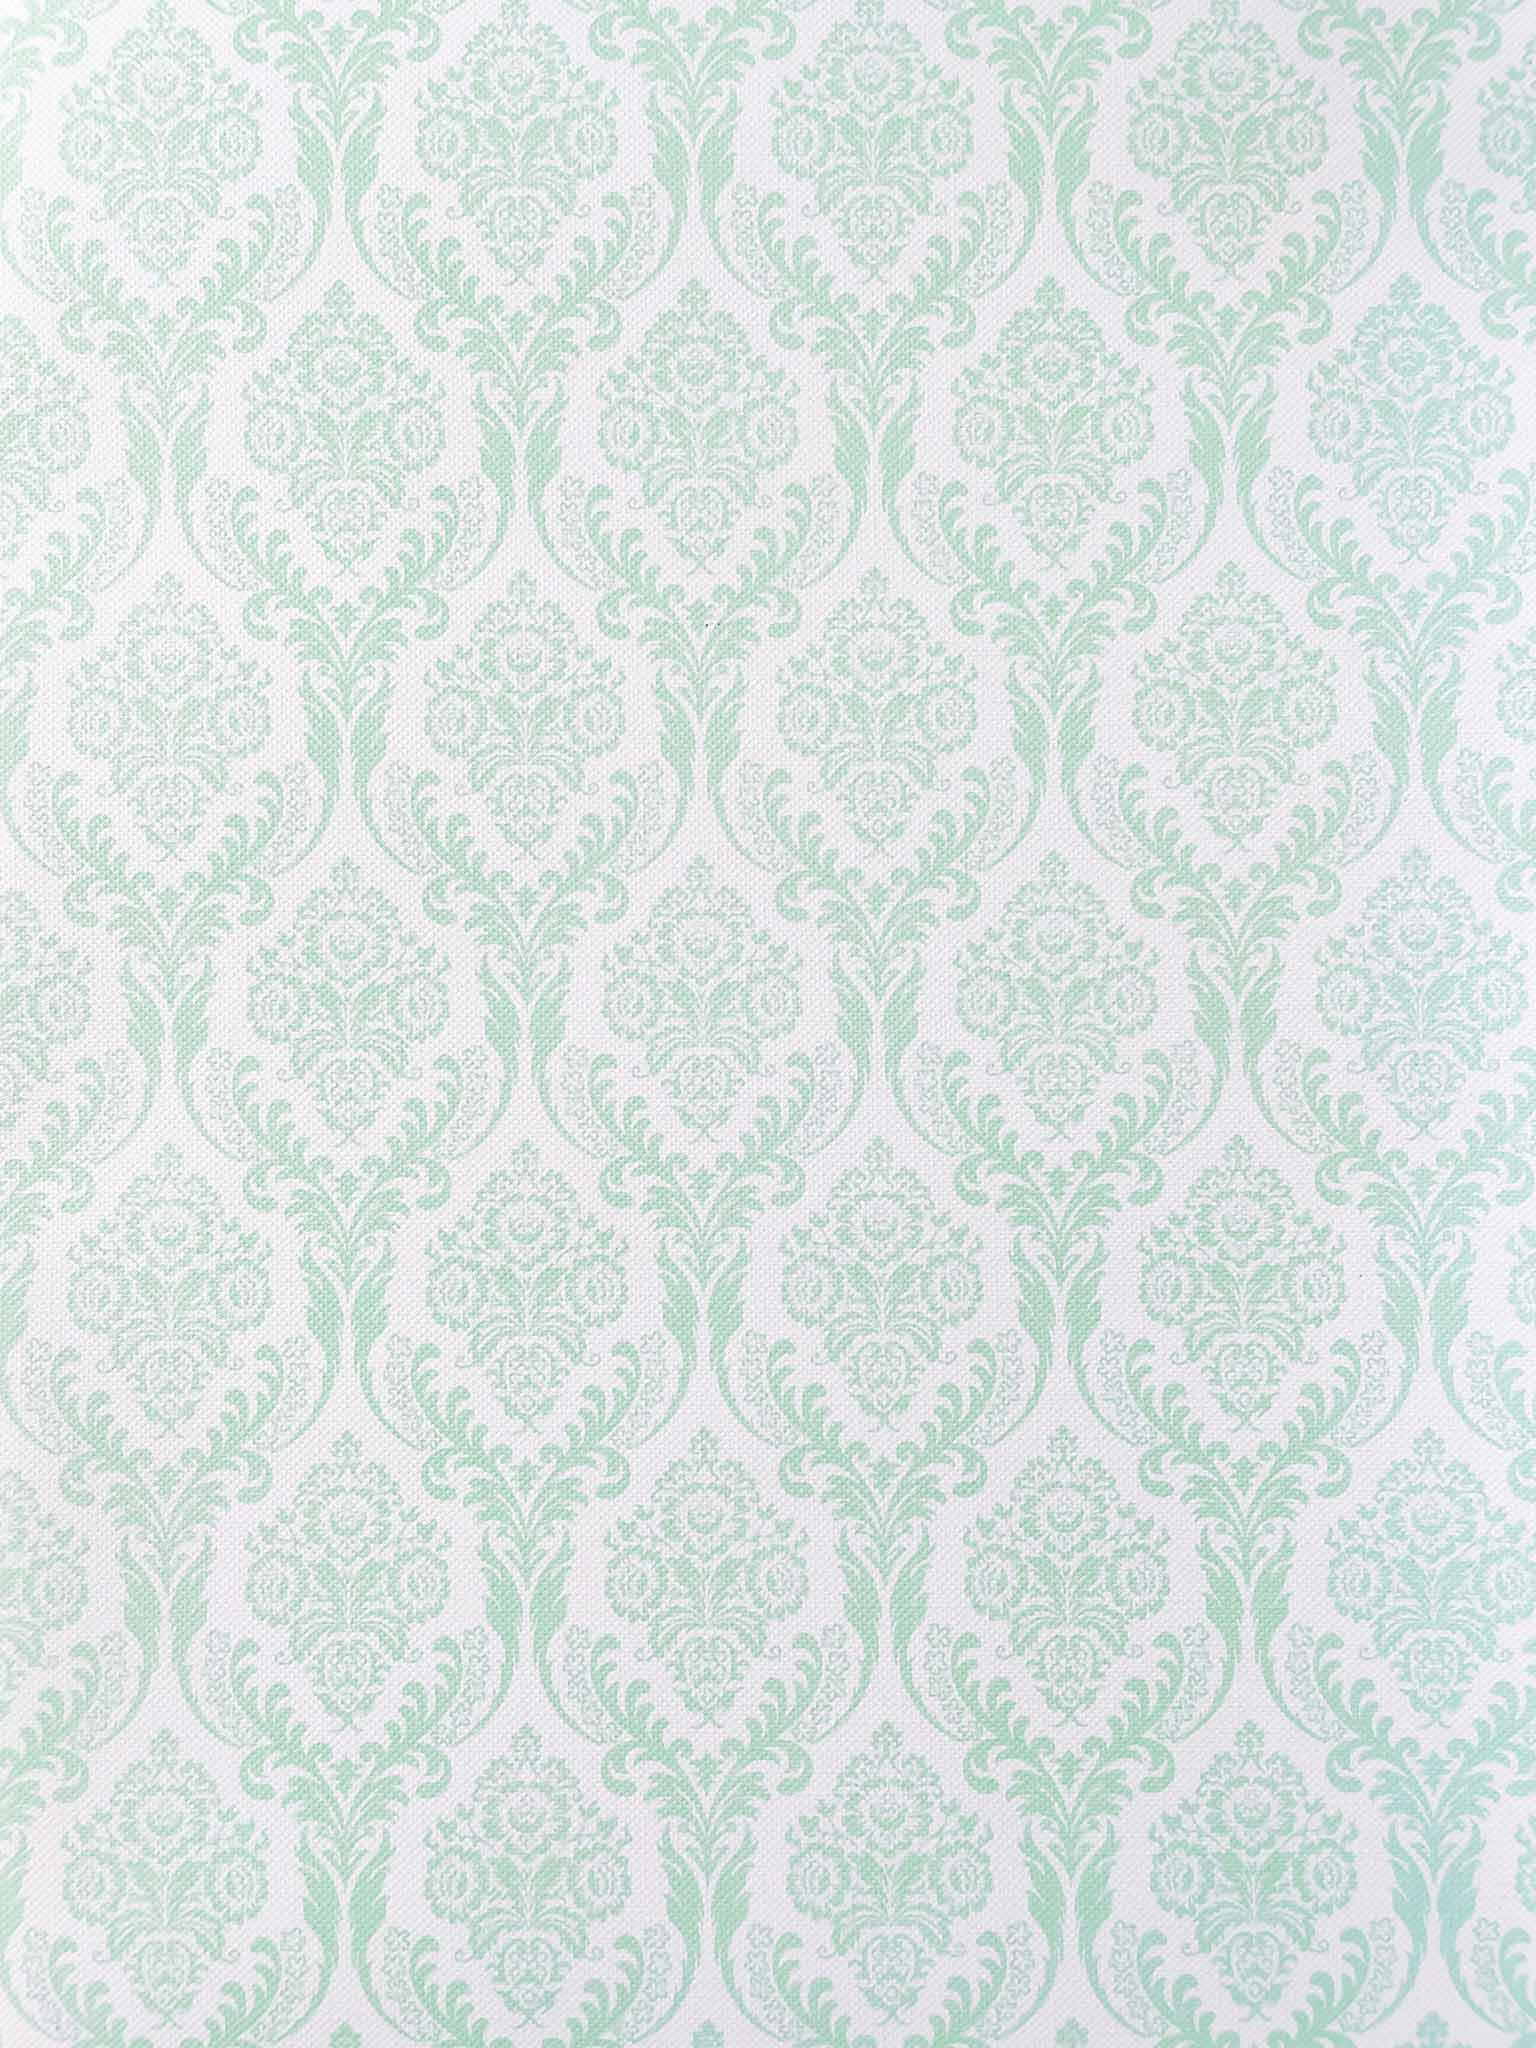 aqua-vintage-patterned-paper